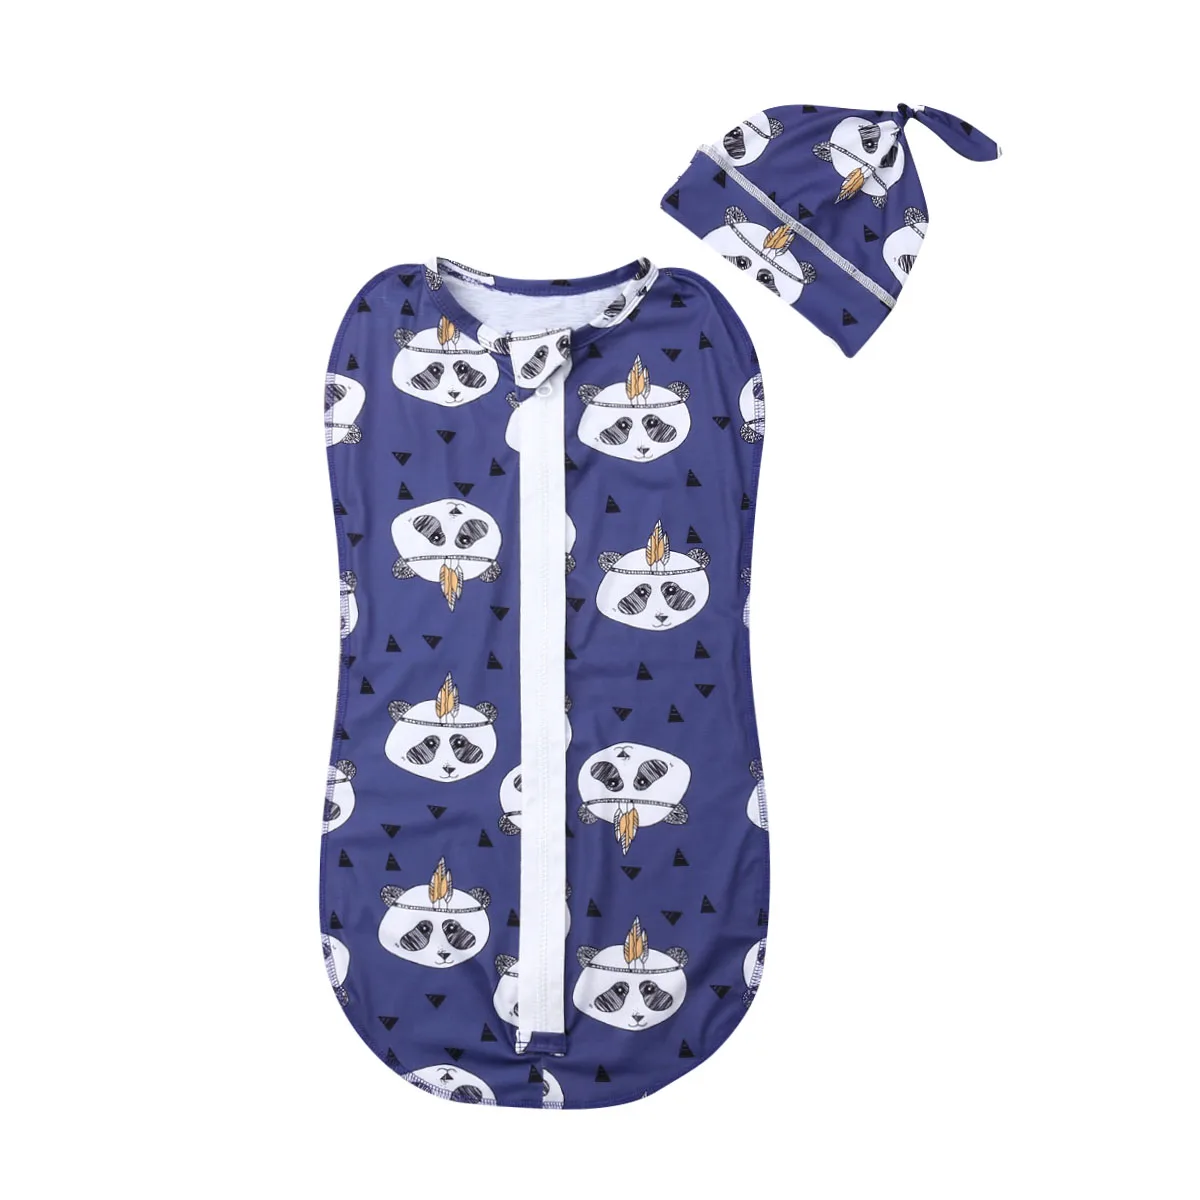 5 стилей, одежда для сна для новорожденных мальчиков и девочек 0-6 месяцев, хлопковое Пеленальное Одеяло на молнии, спальный мешок, шапка, 2 предмета - Цвет: E